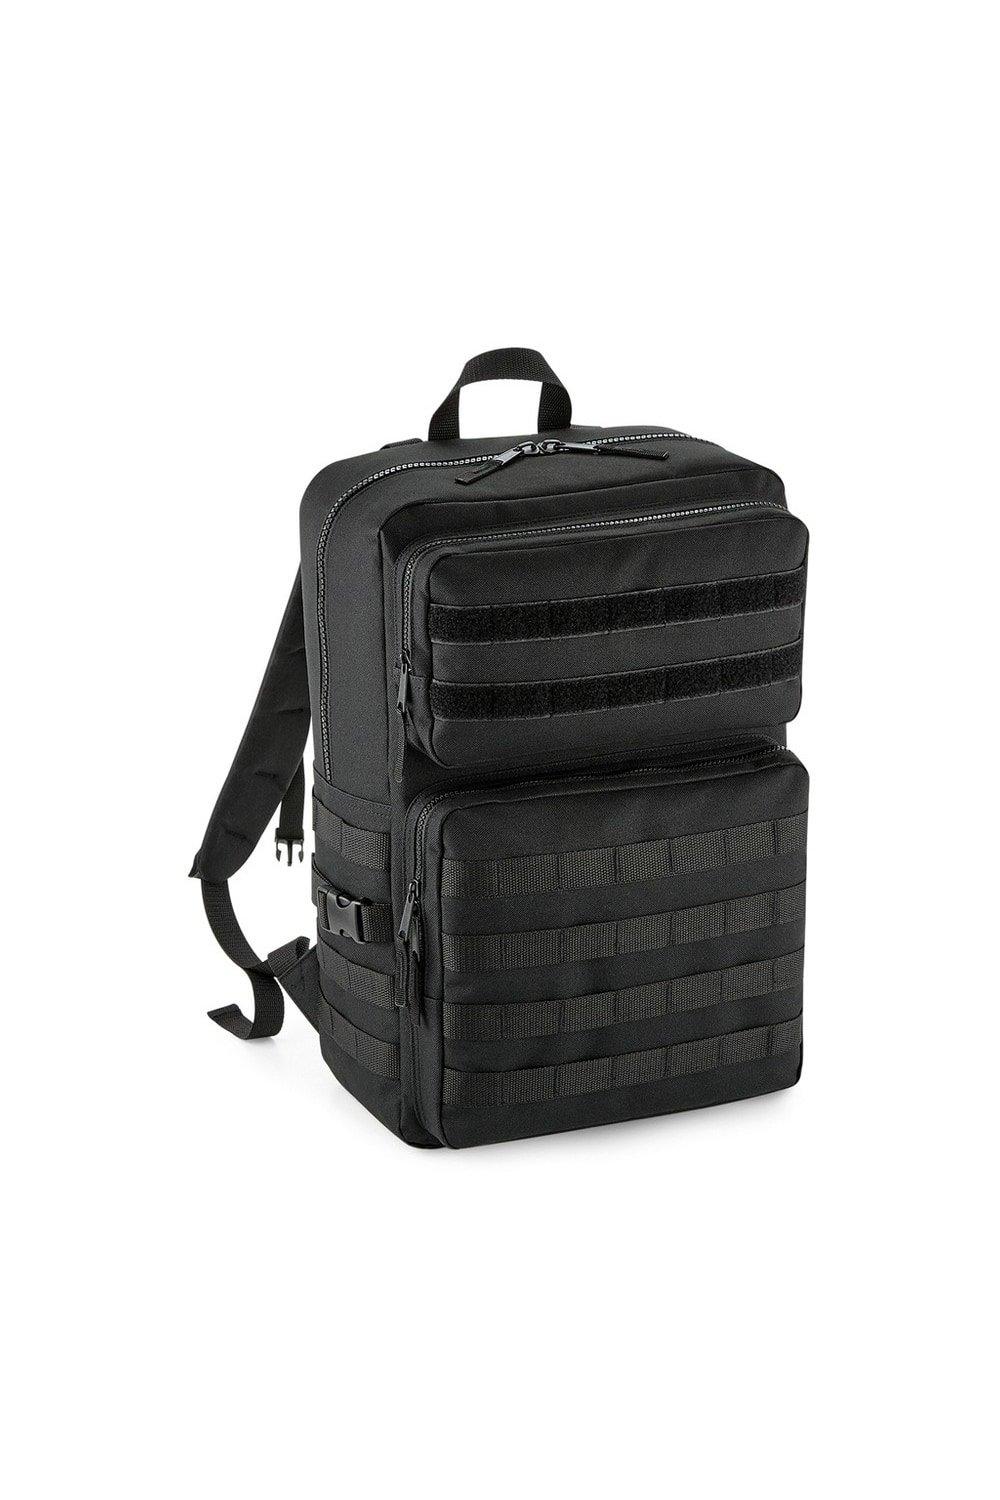 Тактический рюкзак MOLLE Bagbase, черный huntvp 1000d тактический рюкзак 45l molle рюкзак штурмовой пакет открытый кемпинг туризм рюкзак открытый рюкзак многоцветный